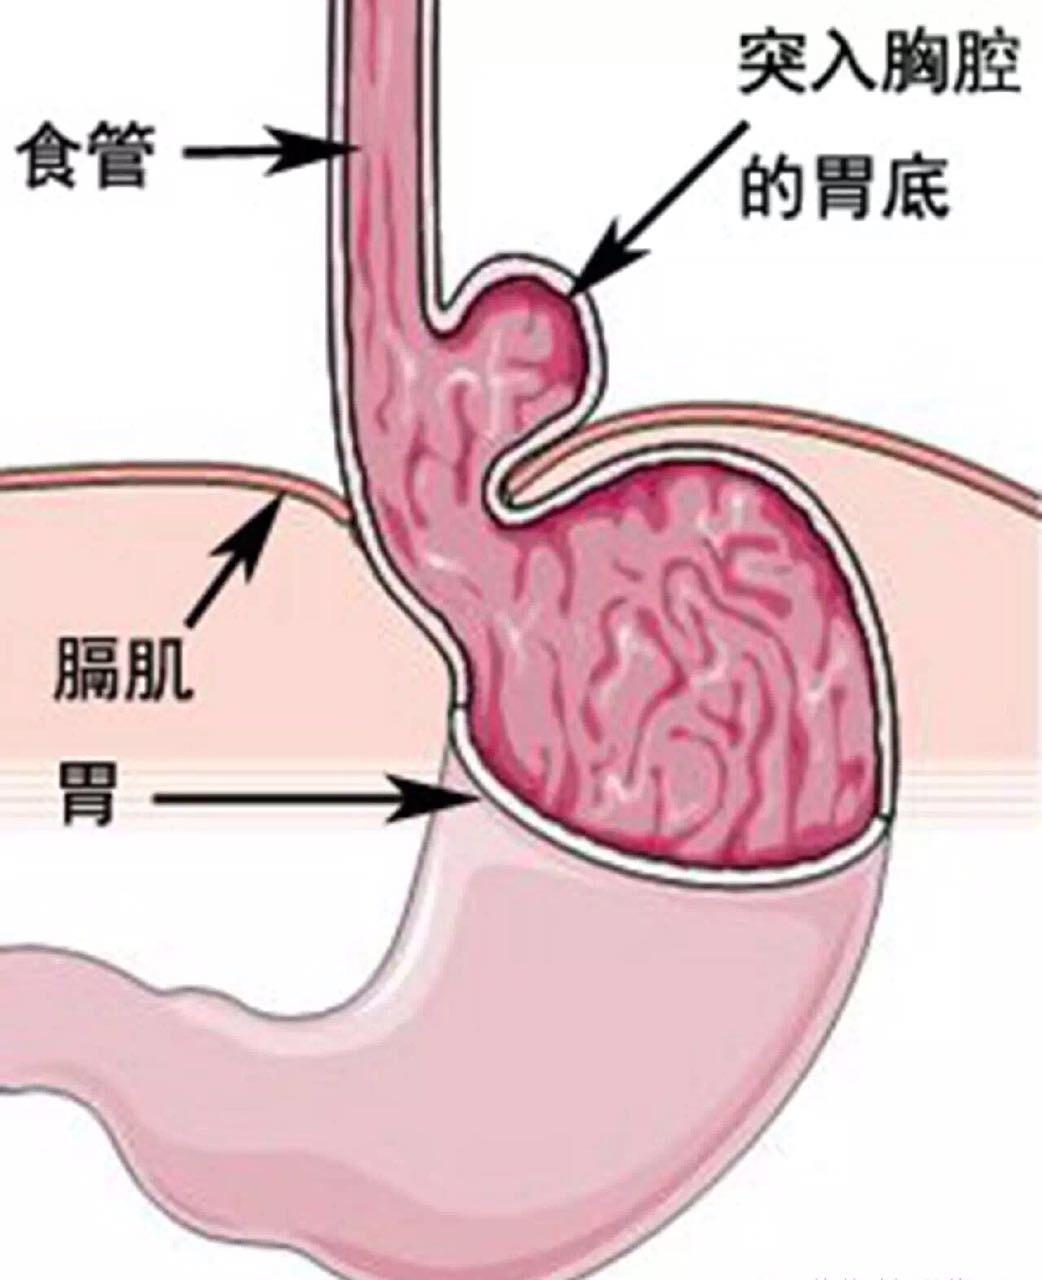 当食管裂孔疝遇上胃食管反流微创手术效果佳